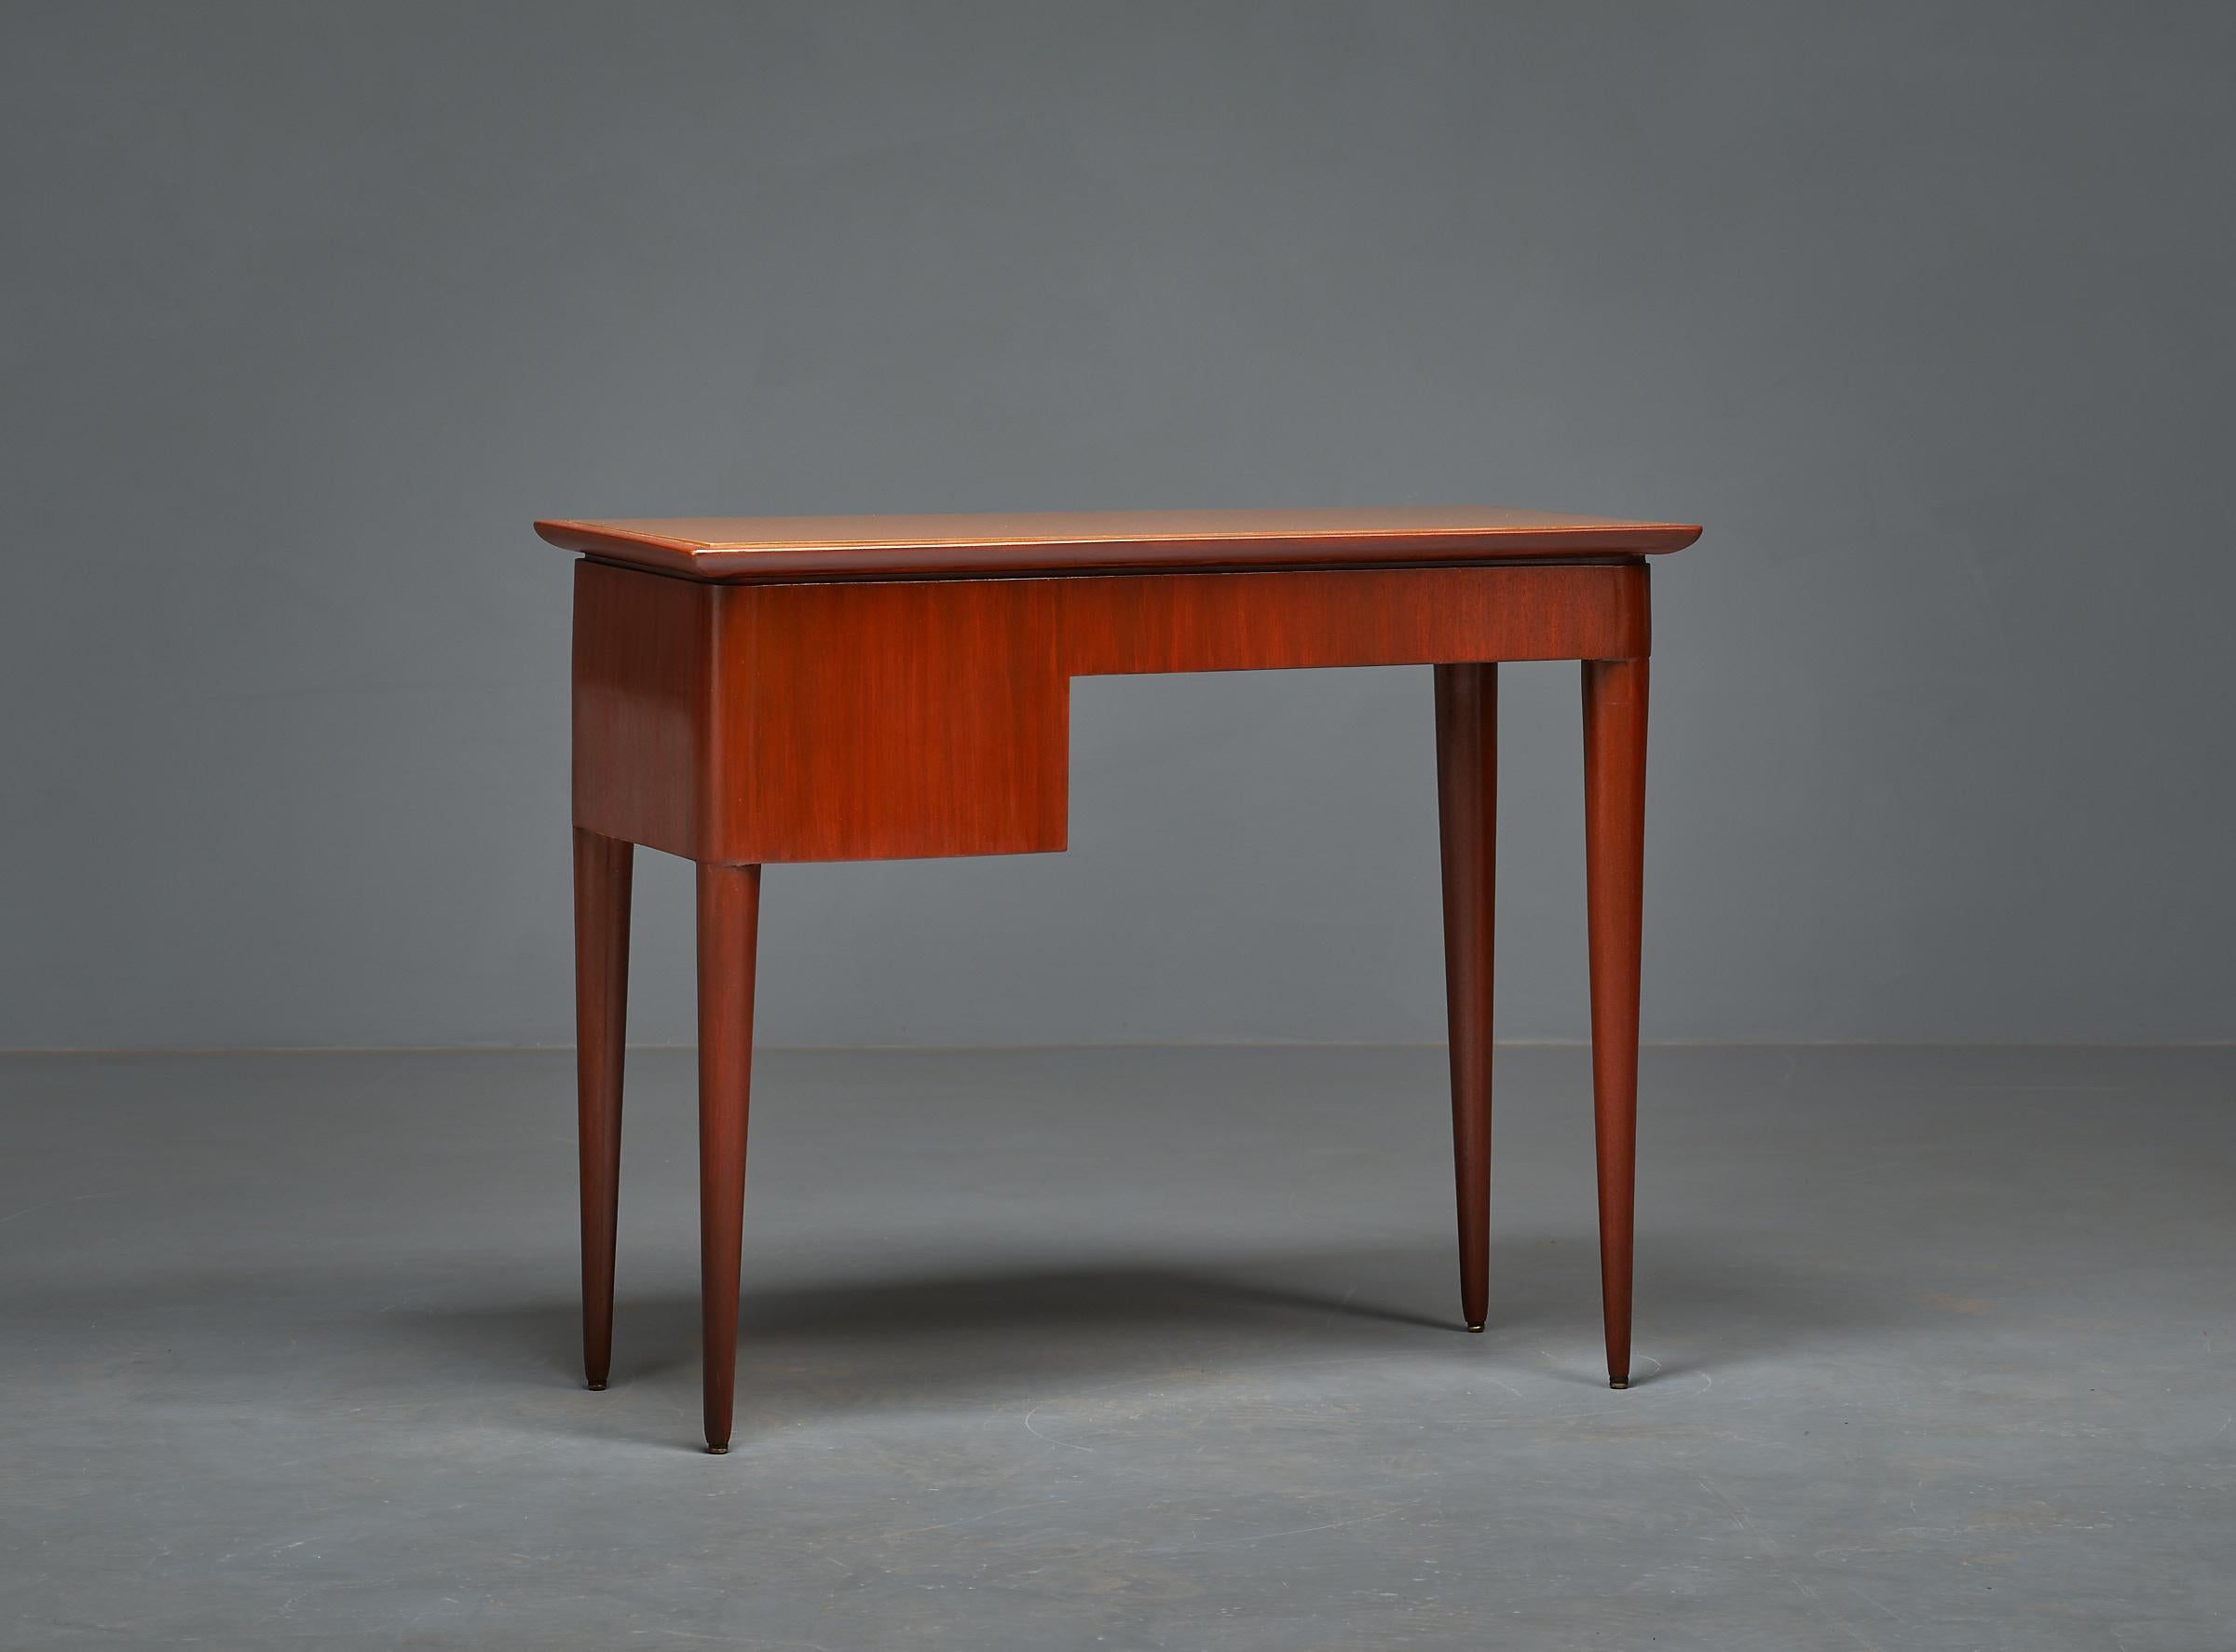 1950s Italian Design Desk by Vittorio Dassi - Exquisite, Elegant, and Restored 2